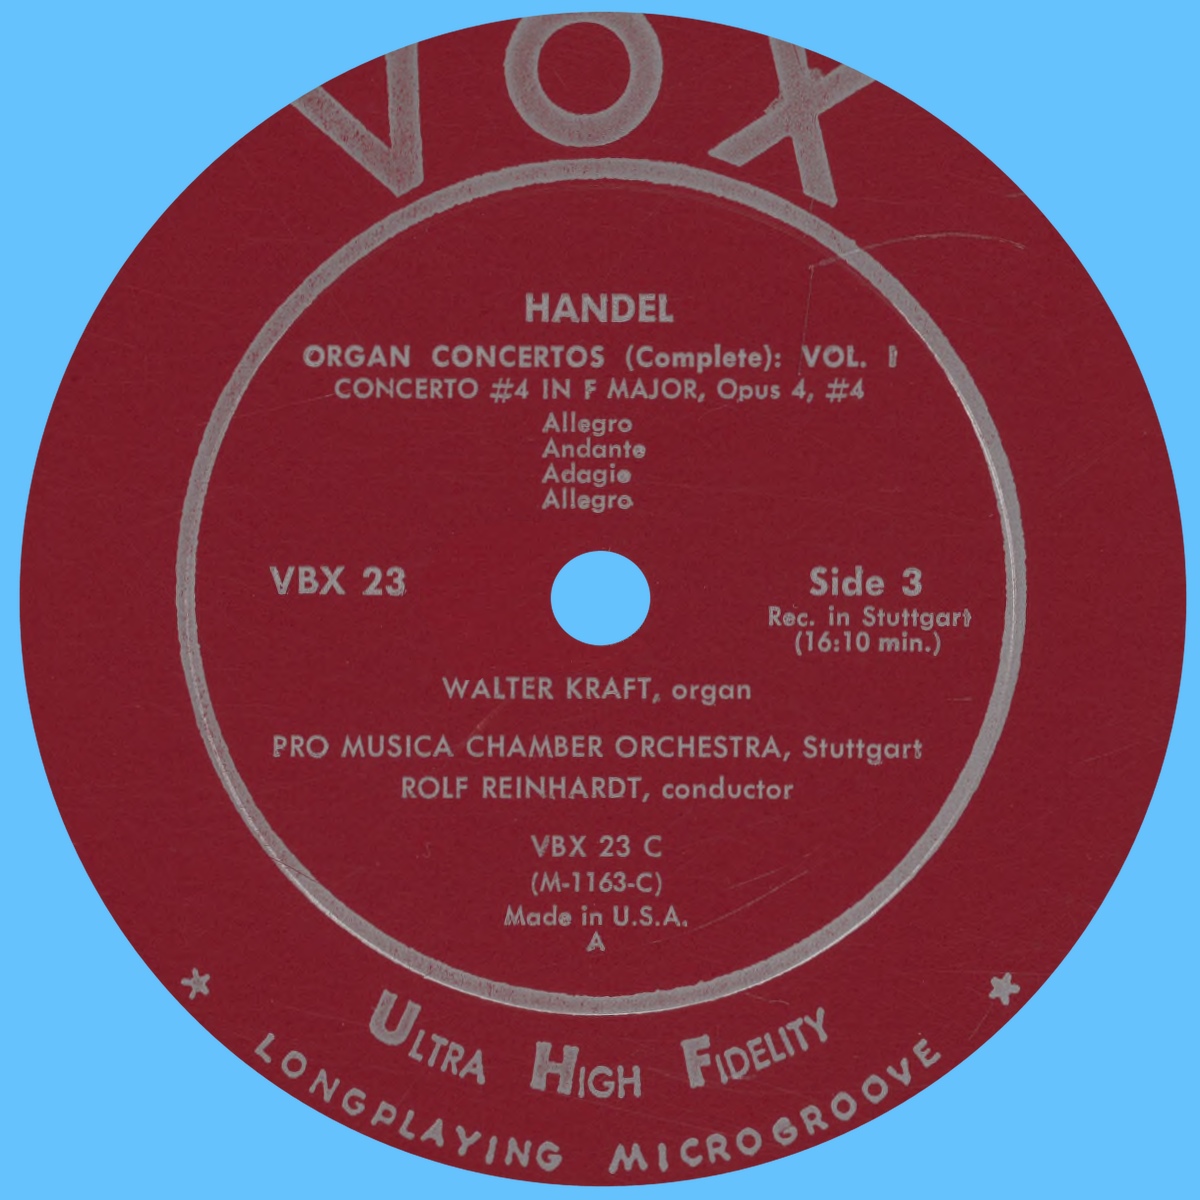 Étiquette recto du second disque du coffret VOX VBX 23